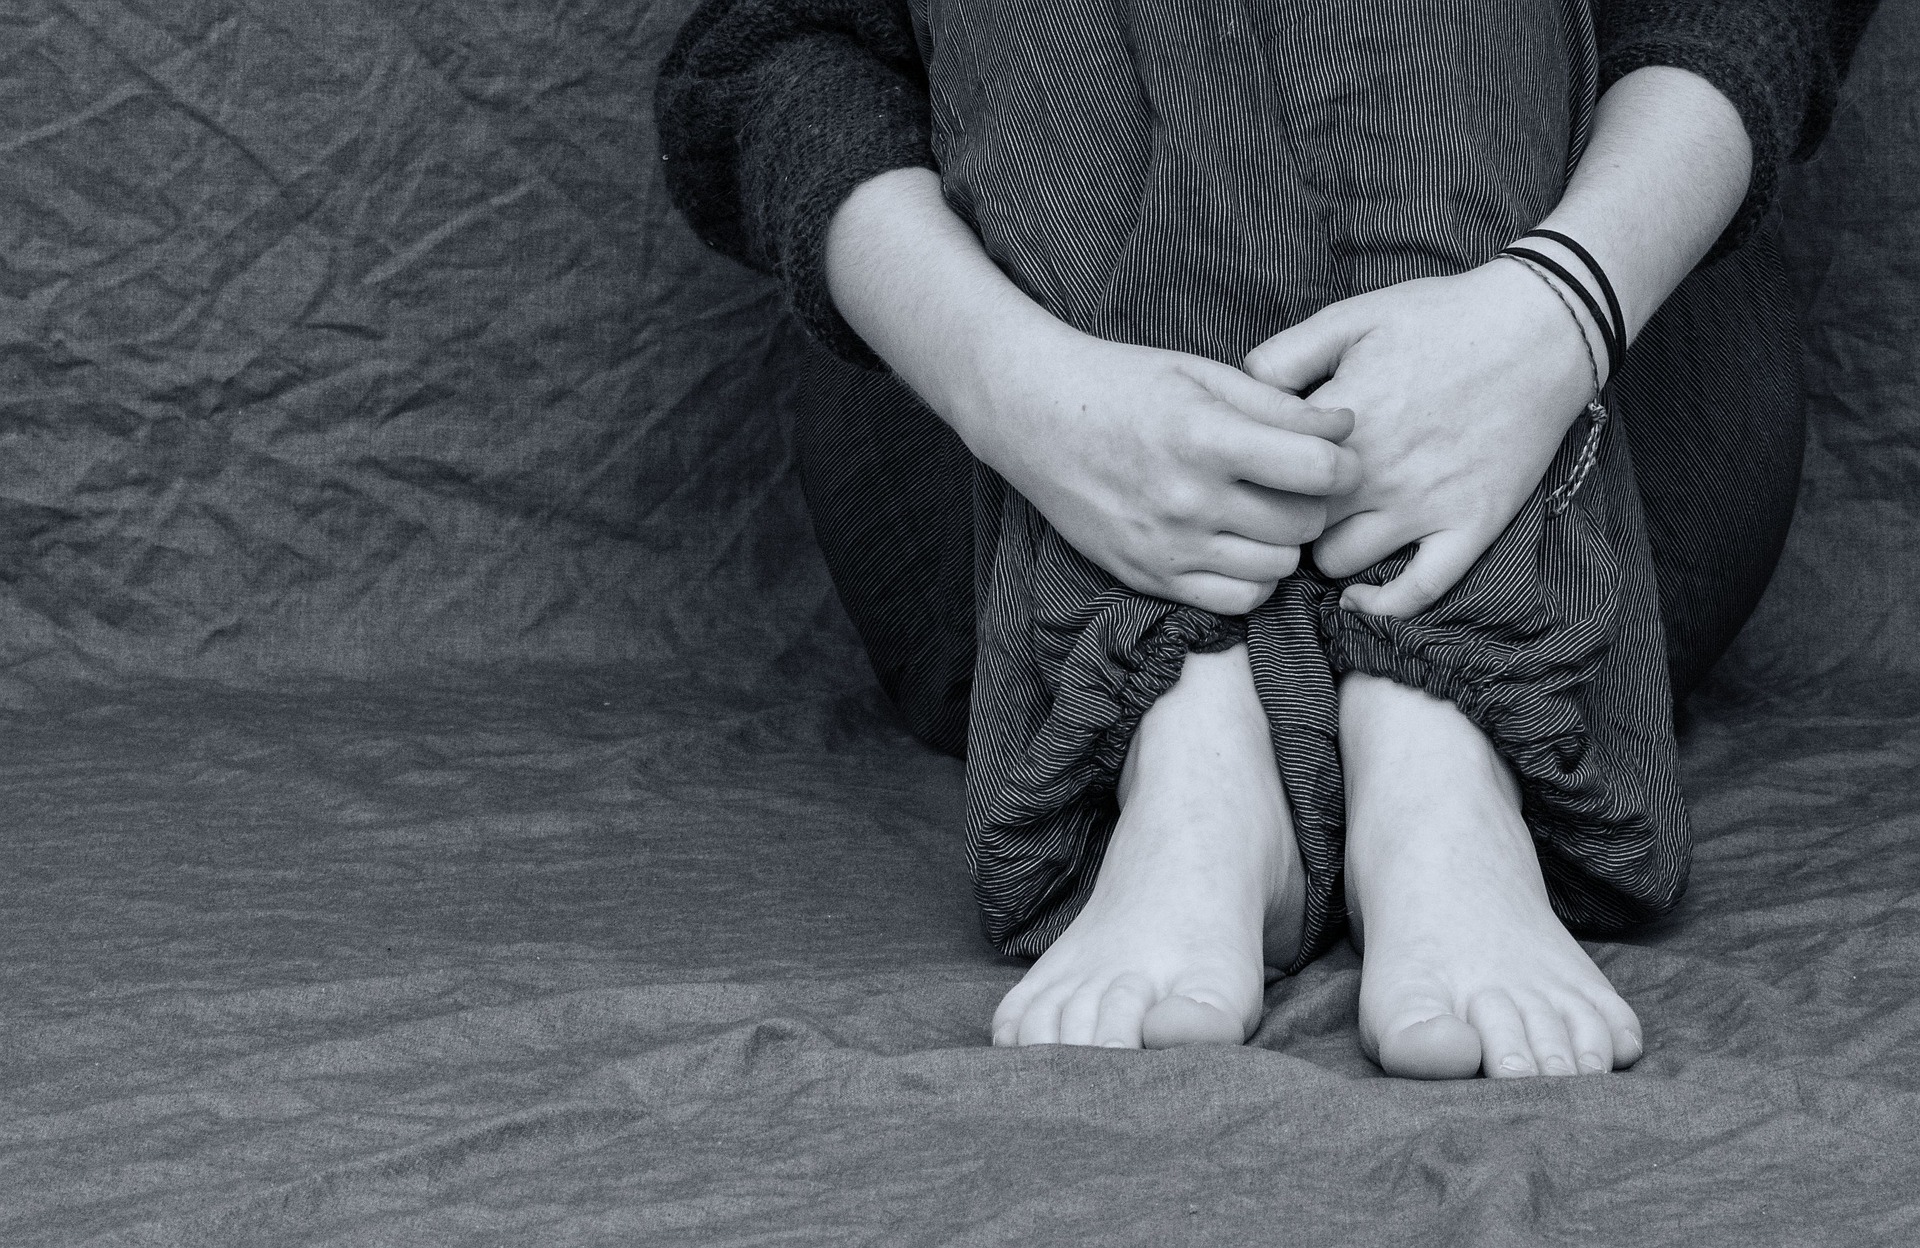 Imagem em preto e branco mostra uma pessoa sentada. O foco é em seus pés e mãos.